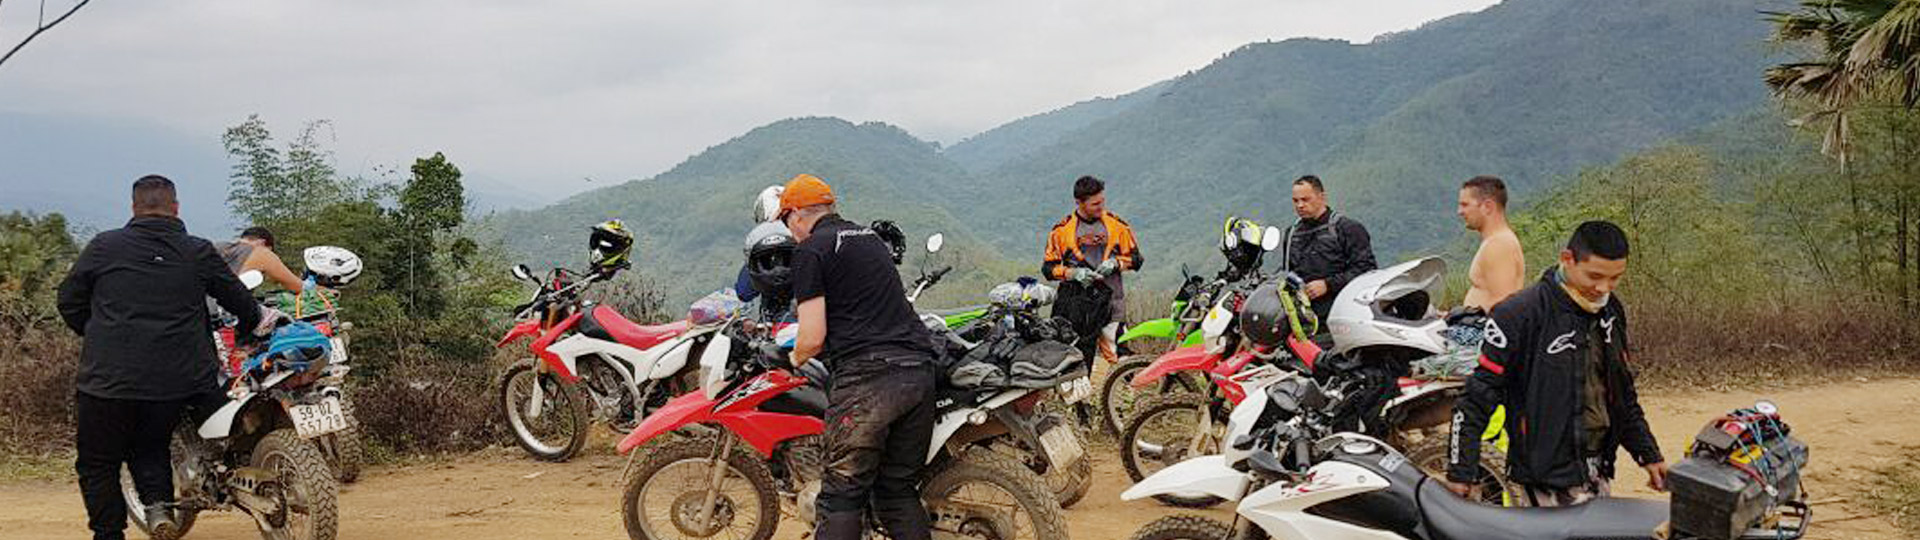 Vientiane Motorbike Tour To Luang Prabang - 7 Days